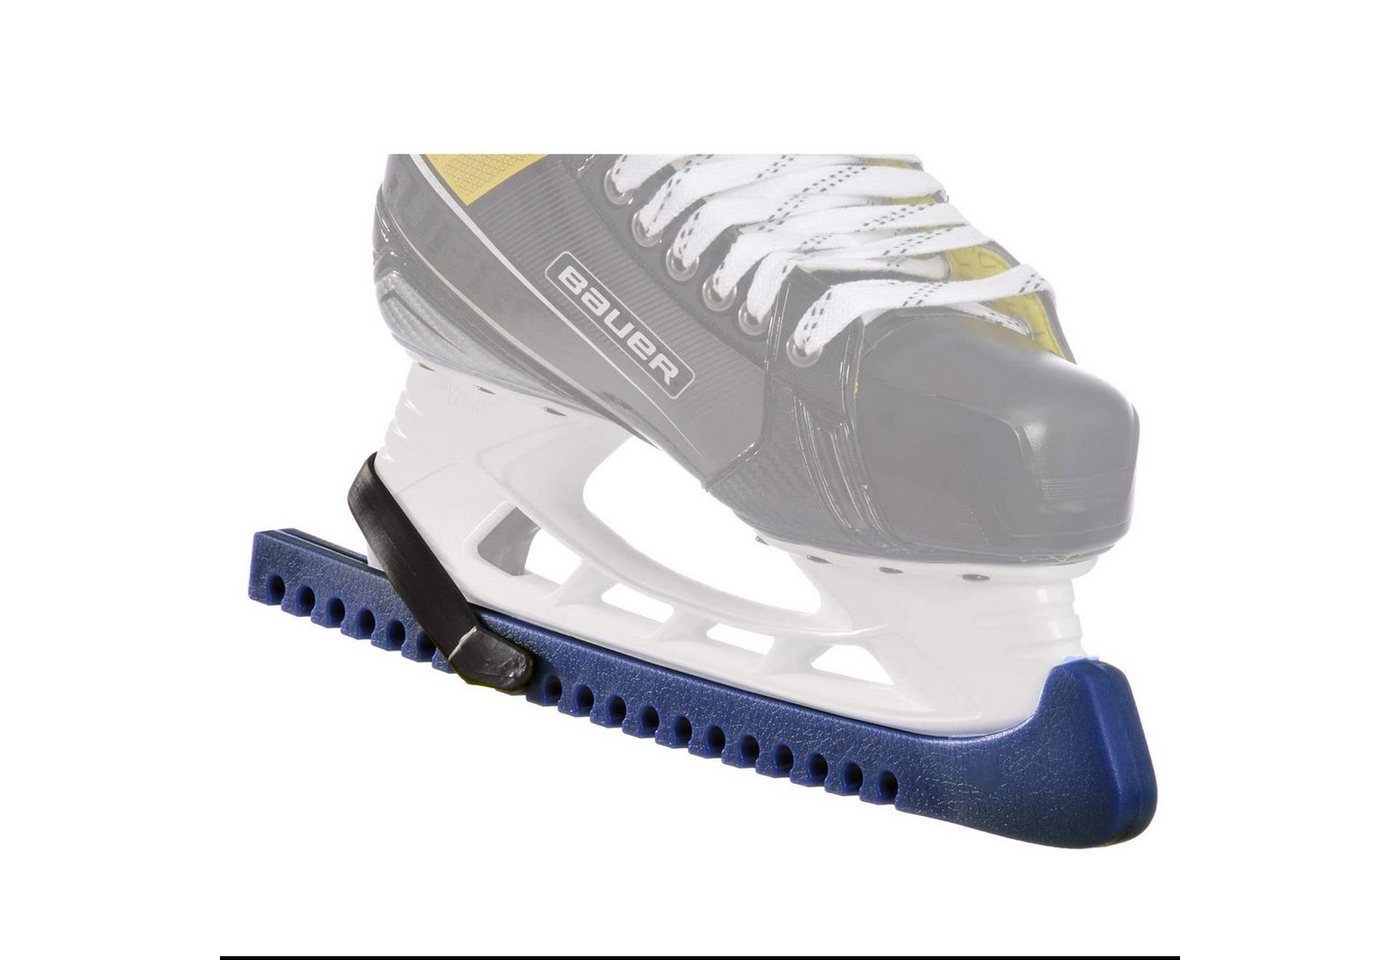 Eishockey: Eishockey-Bekleidung online kaufen im JoggenOnline-Shop